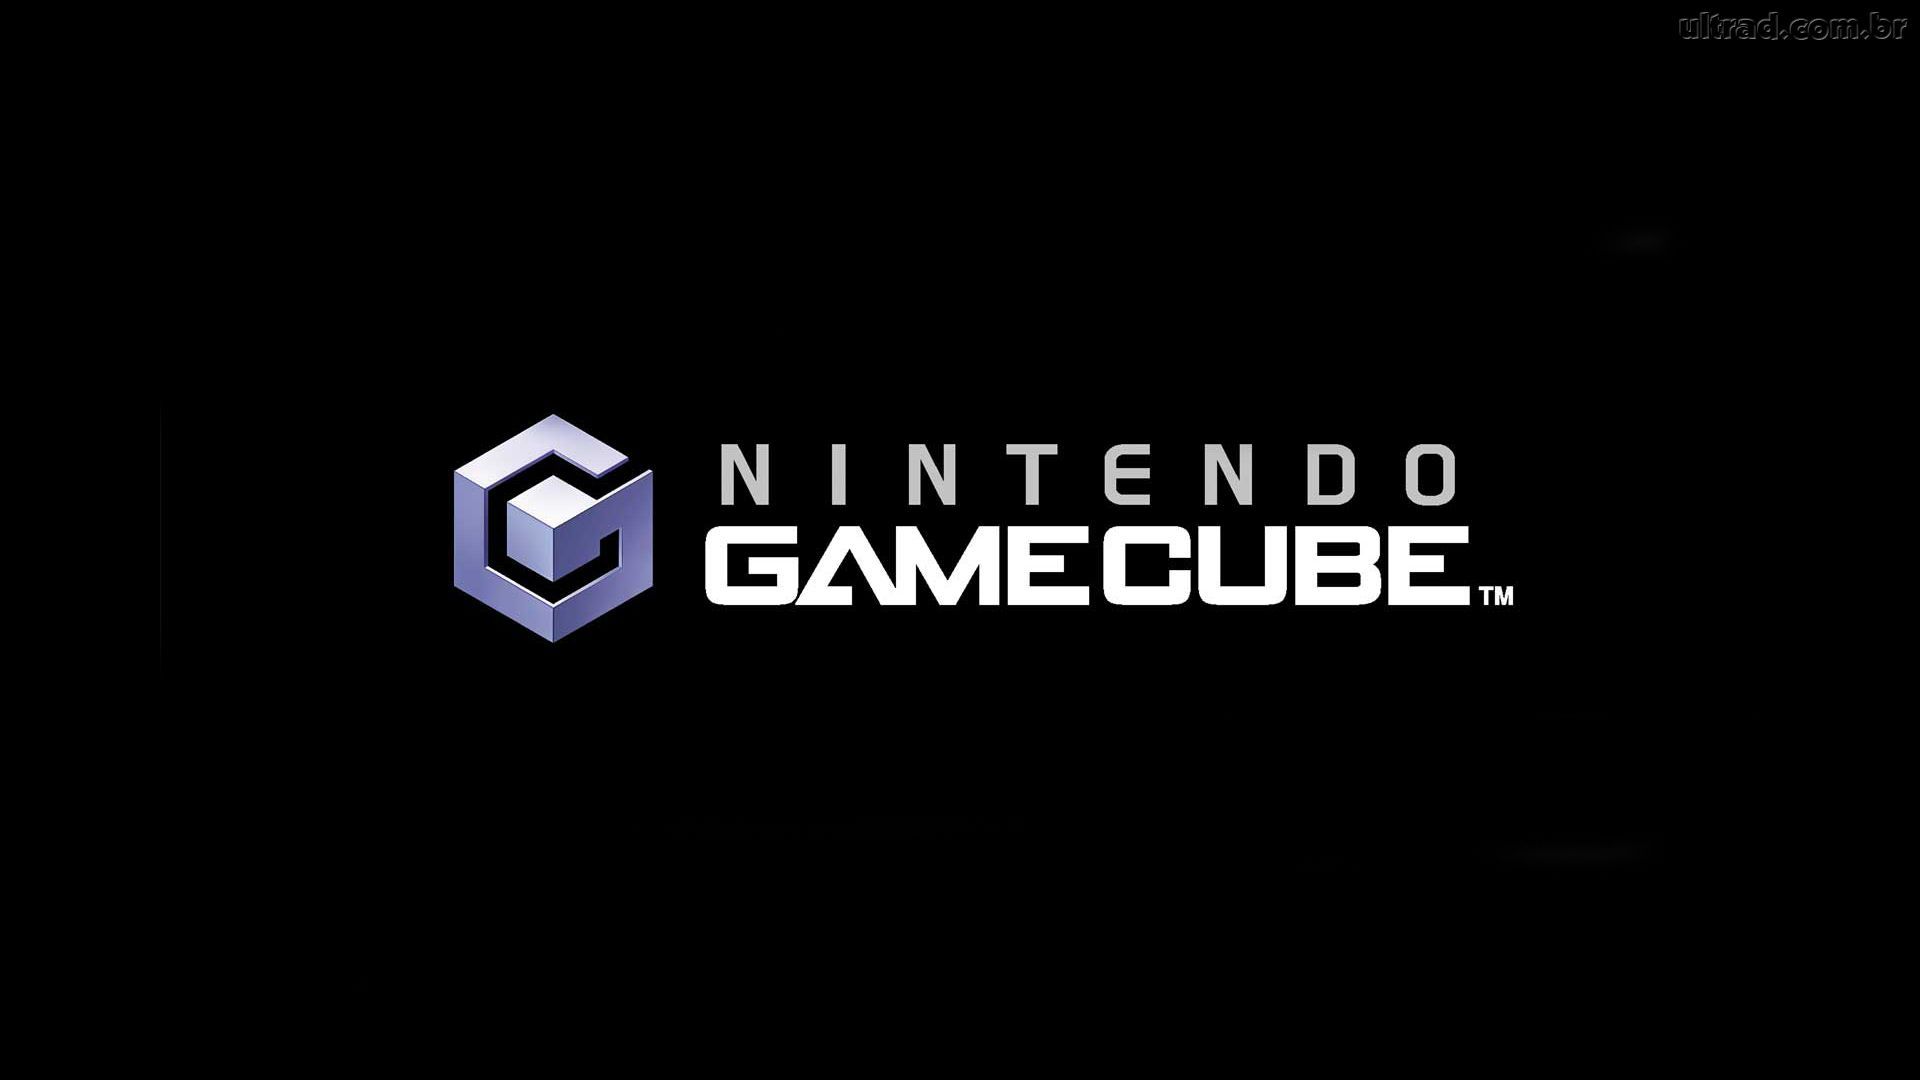 Nintendo Gamecube compie oggi 17 anni!